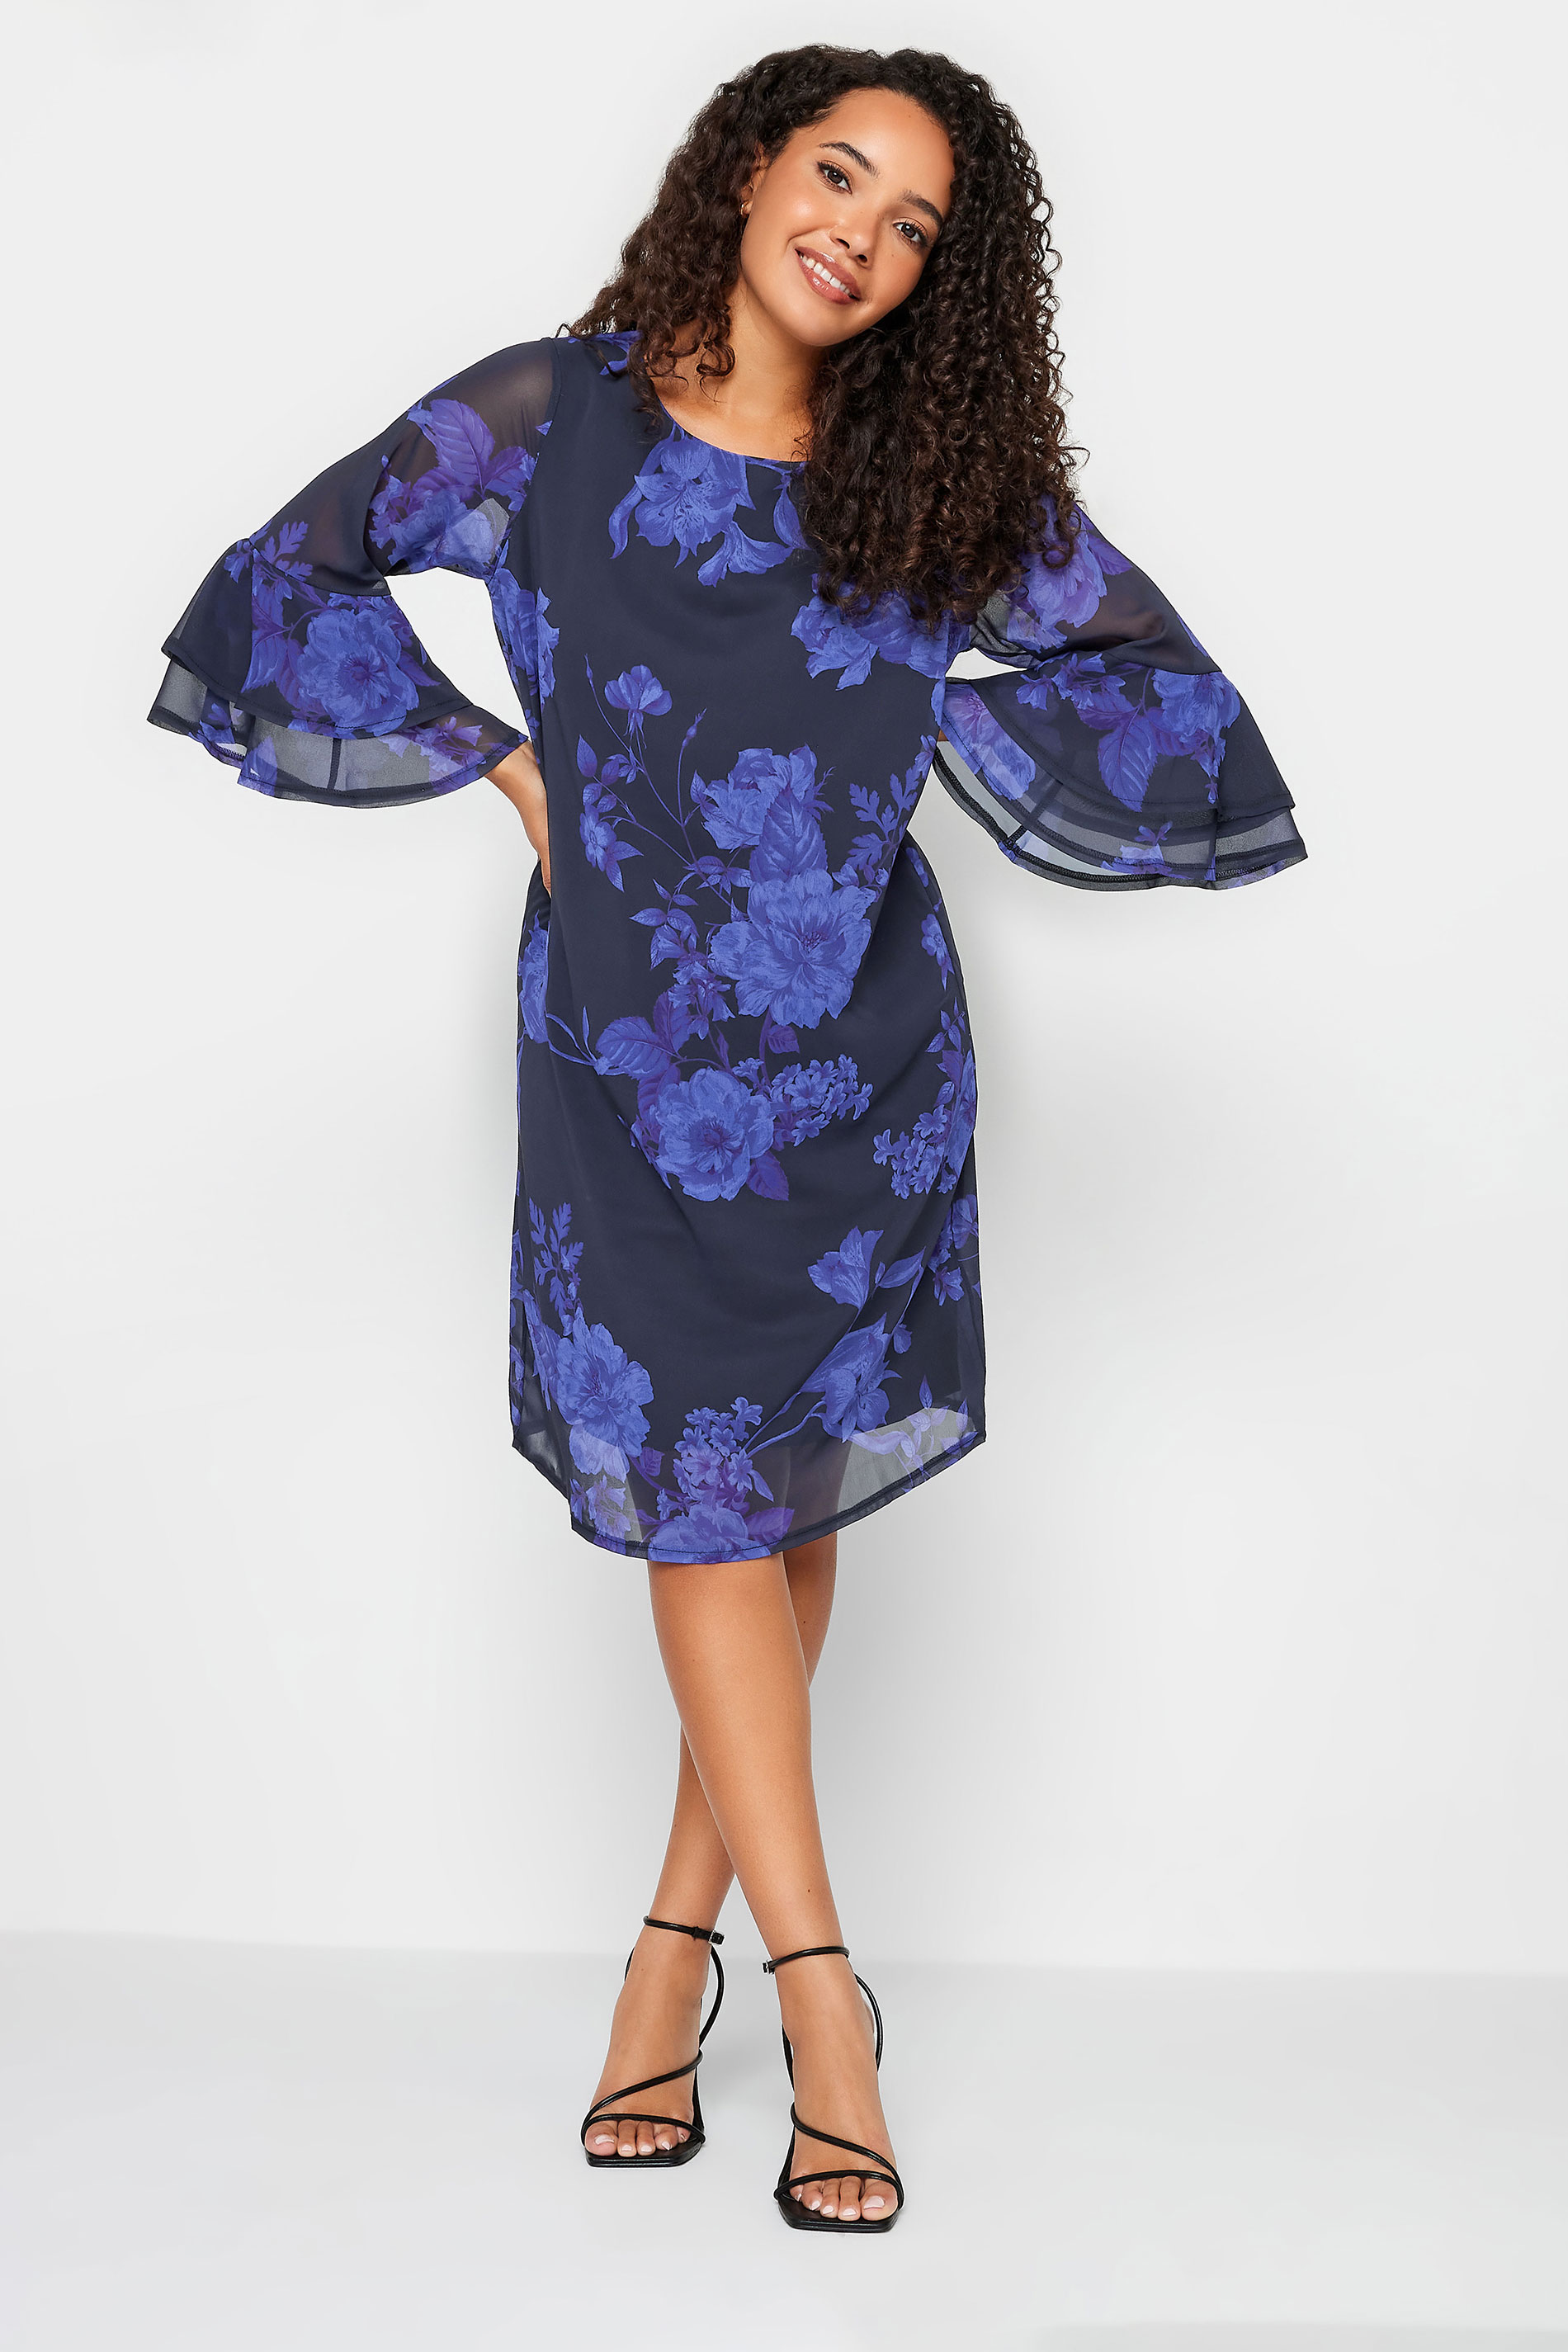 M&Co Black & Purple  Floral Print Flute Sleeve Shift Dress | M&Co 1